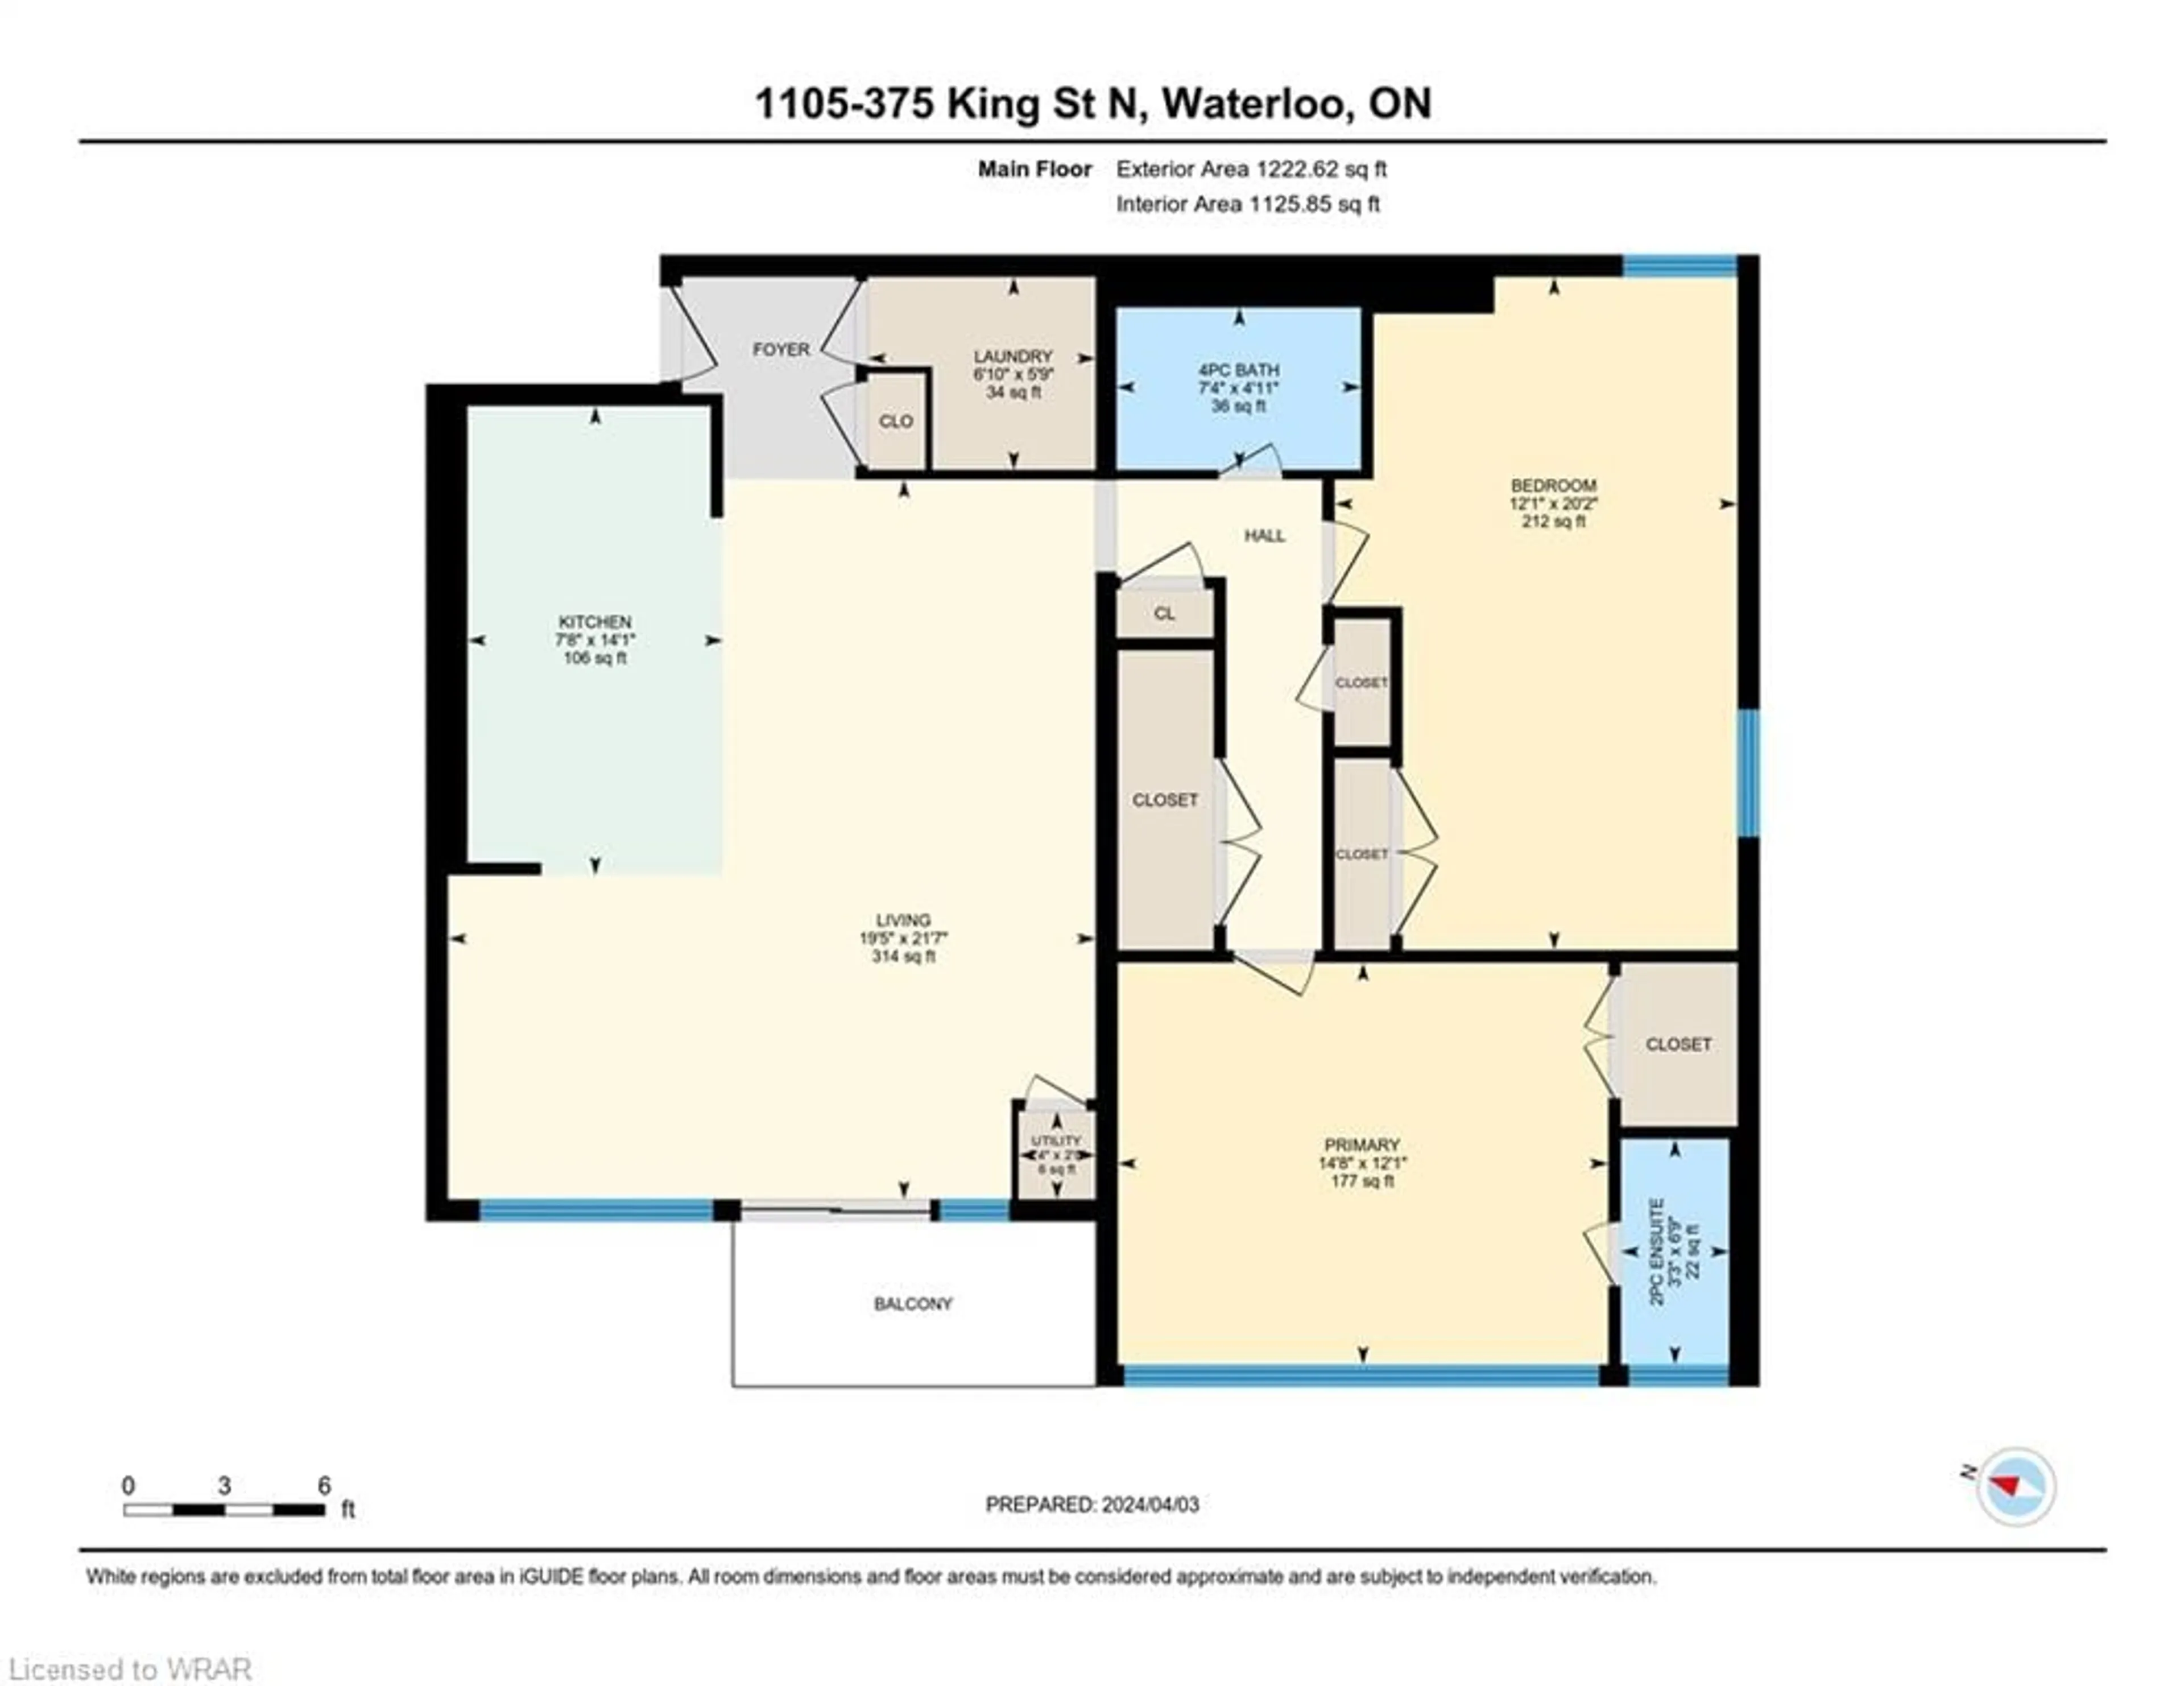 Floor plan for 375 King St #1105, Waterloo Ontario N2J 4L6